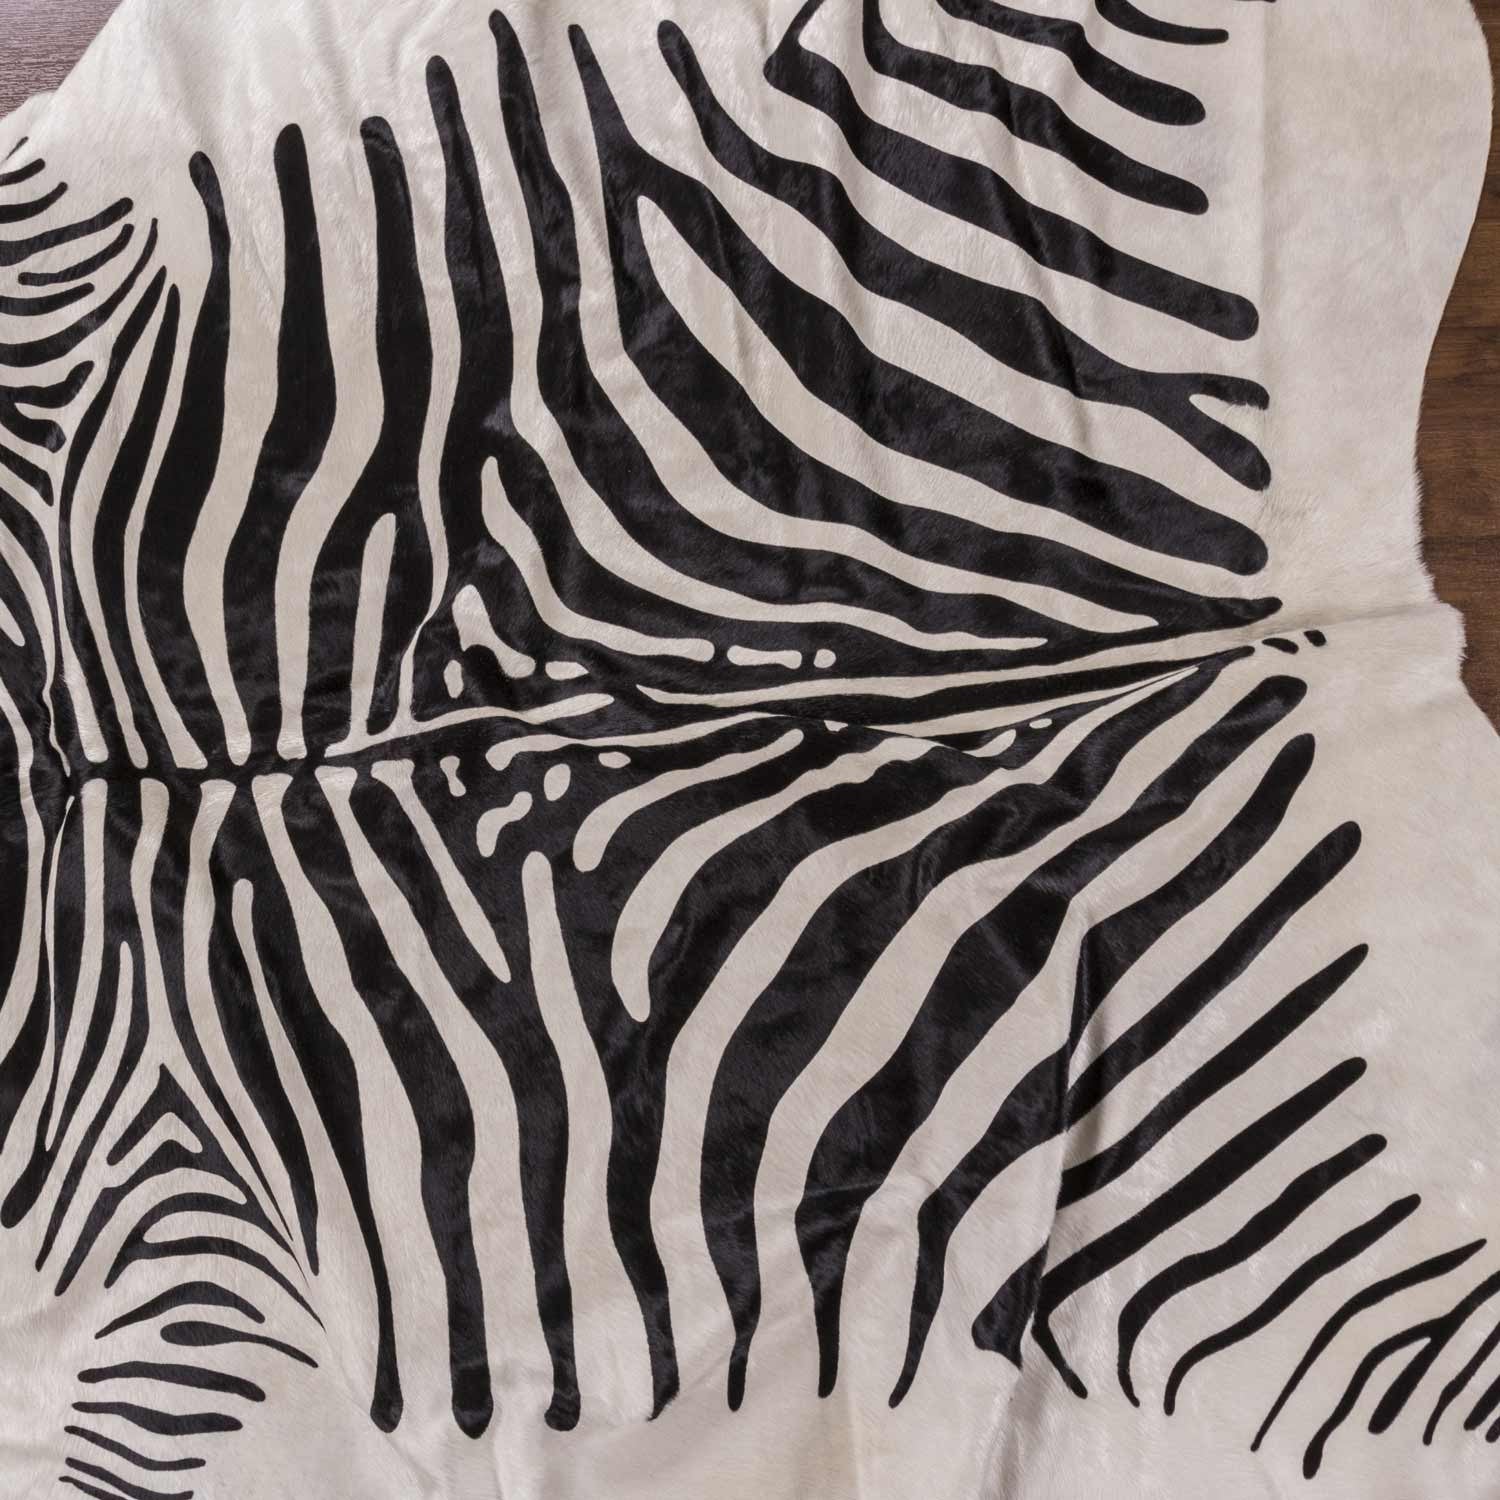 Zebra Africa Print Cowhide Rug - Rodeo Cowhide Rugs